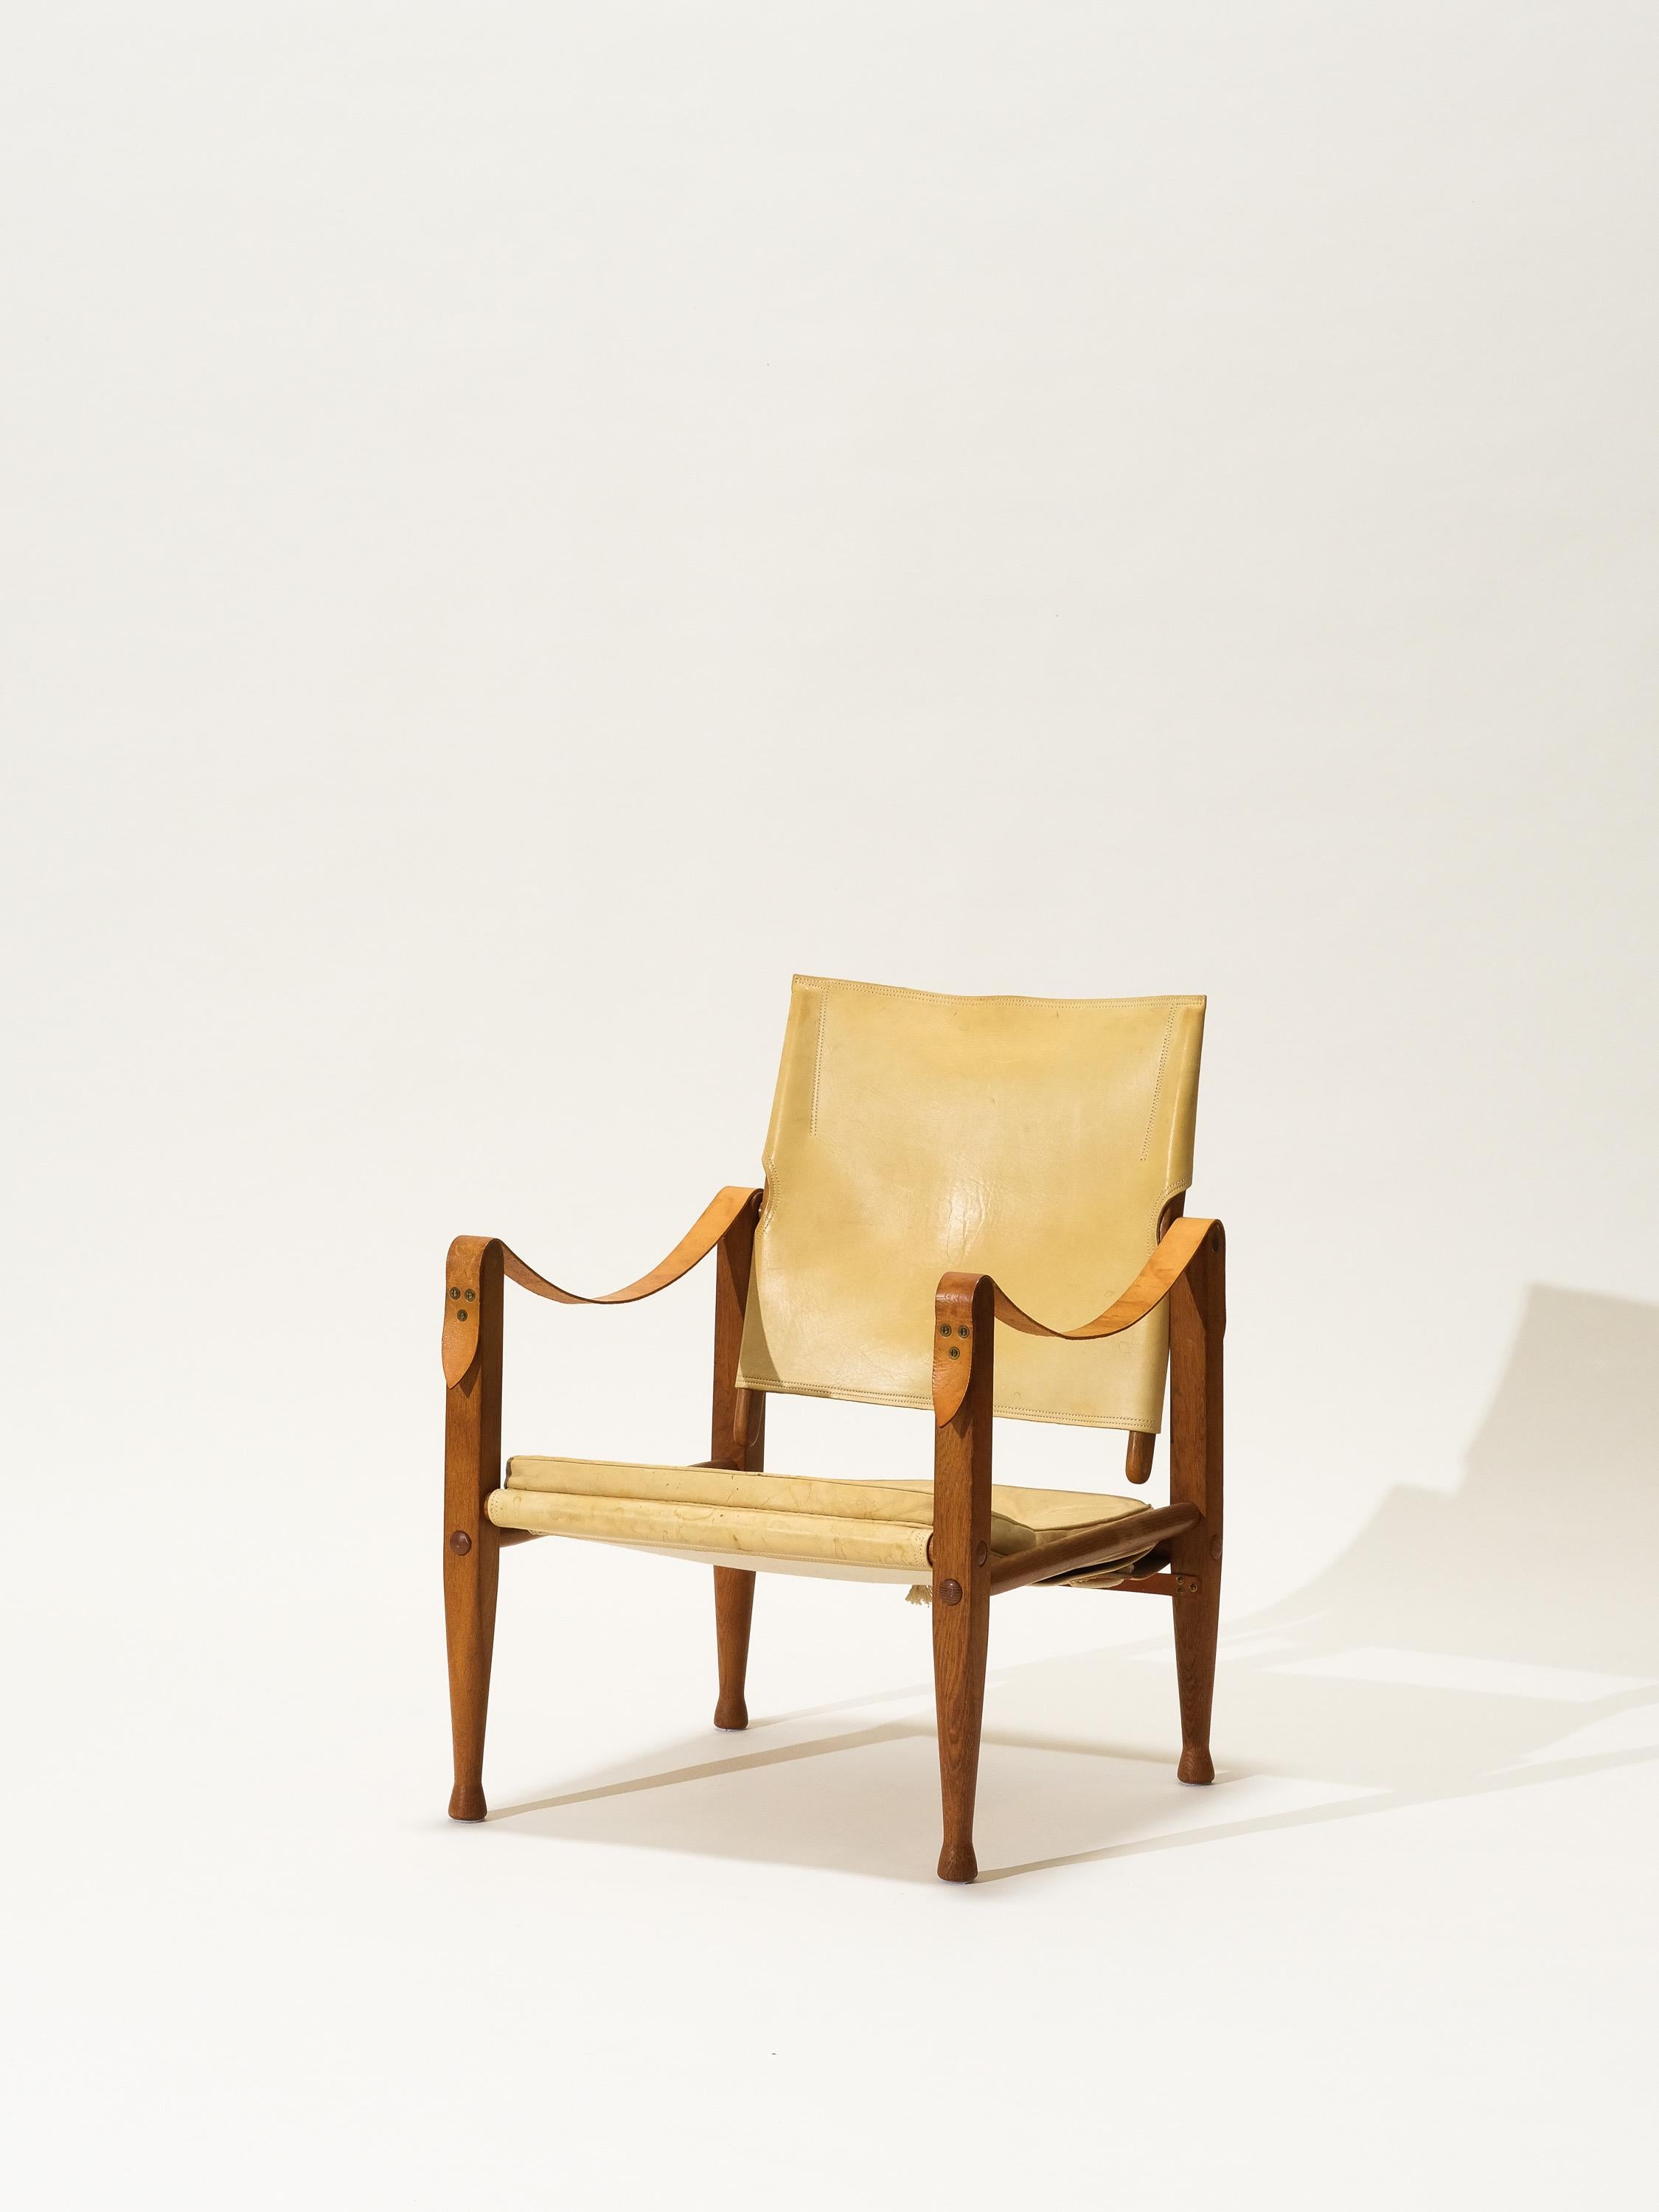 La chaise Safari a été conçue par Kaare Klint dans les années 1930. Cette chaise safari est produite par Rud Rasmussen au Danemark. Il s'agit de la première conception où aucun outil n'est nécessaire pour assembler et désassembler les chaises. Les